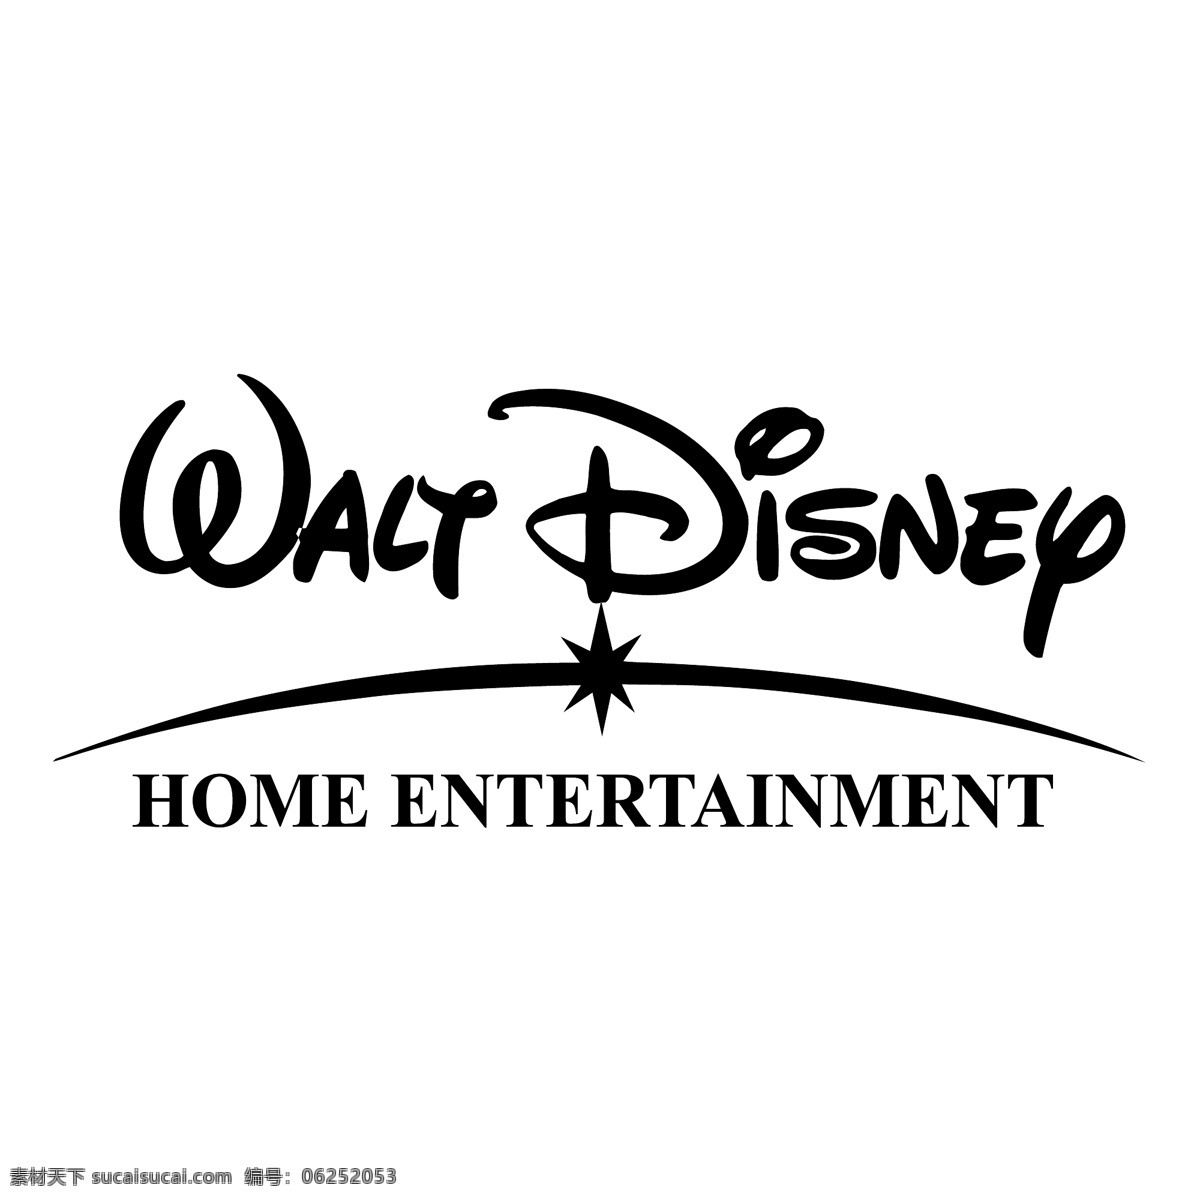 迪士尼 家庭 娱乐 免费 标志 psd源文件 logo设计